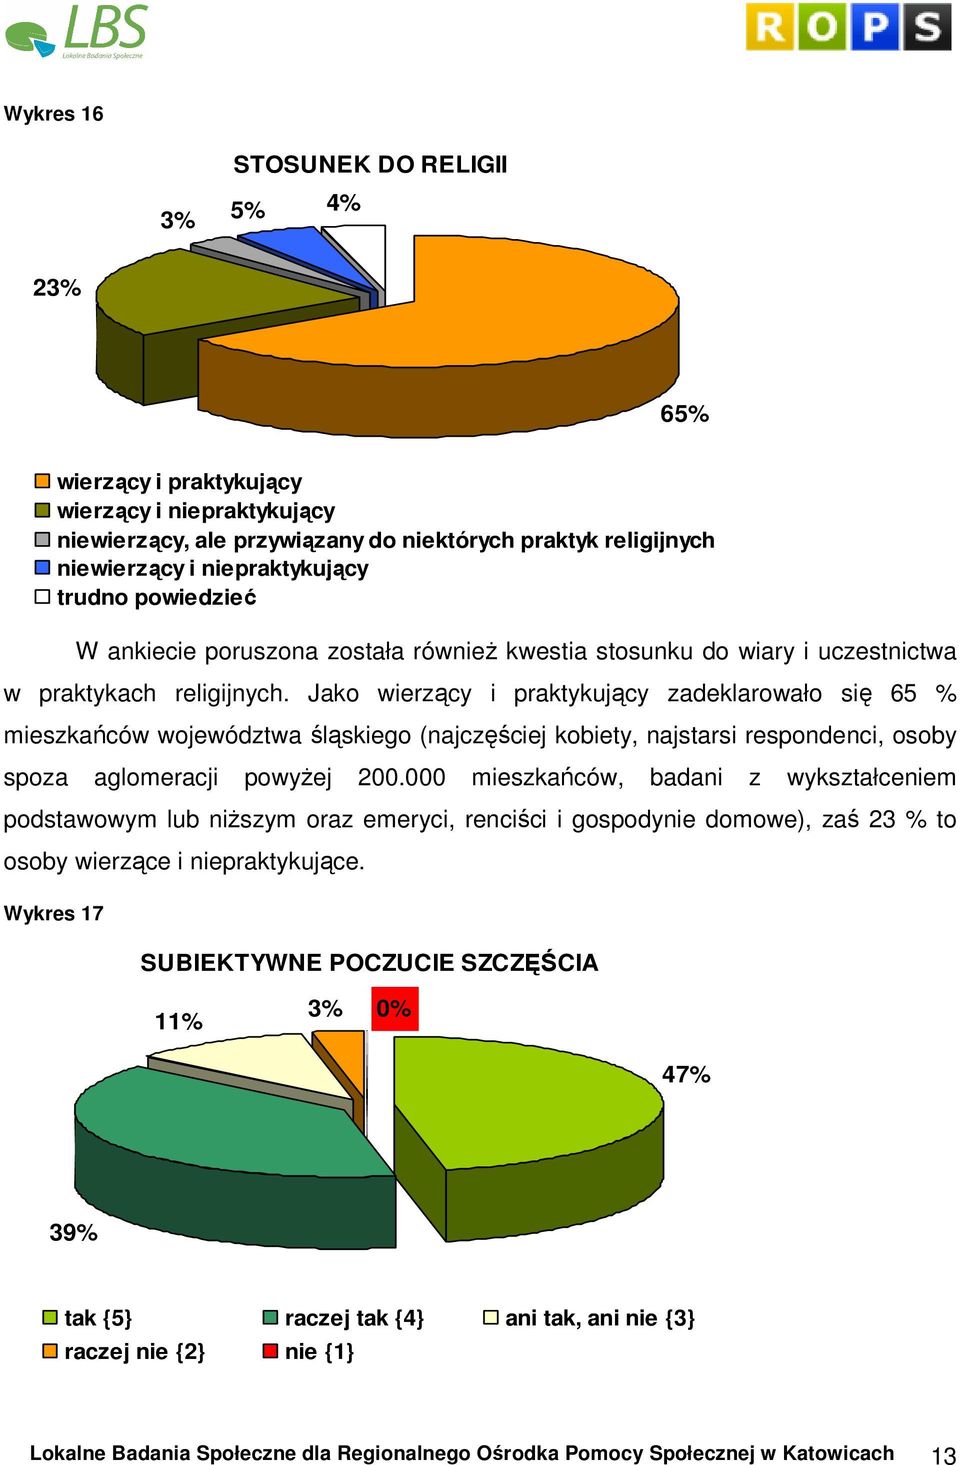 Jako wierzący i praktykujący zadeklarowało się 65 % mieszkańców województwa śląskiego (najczęściej kobiety, najstarsi respondenci, osoby spoza aglomeracji powyŝej 200.